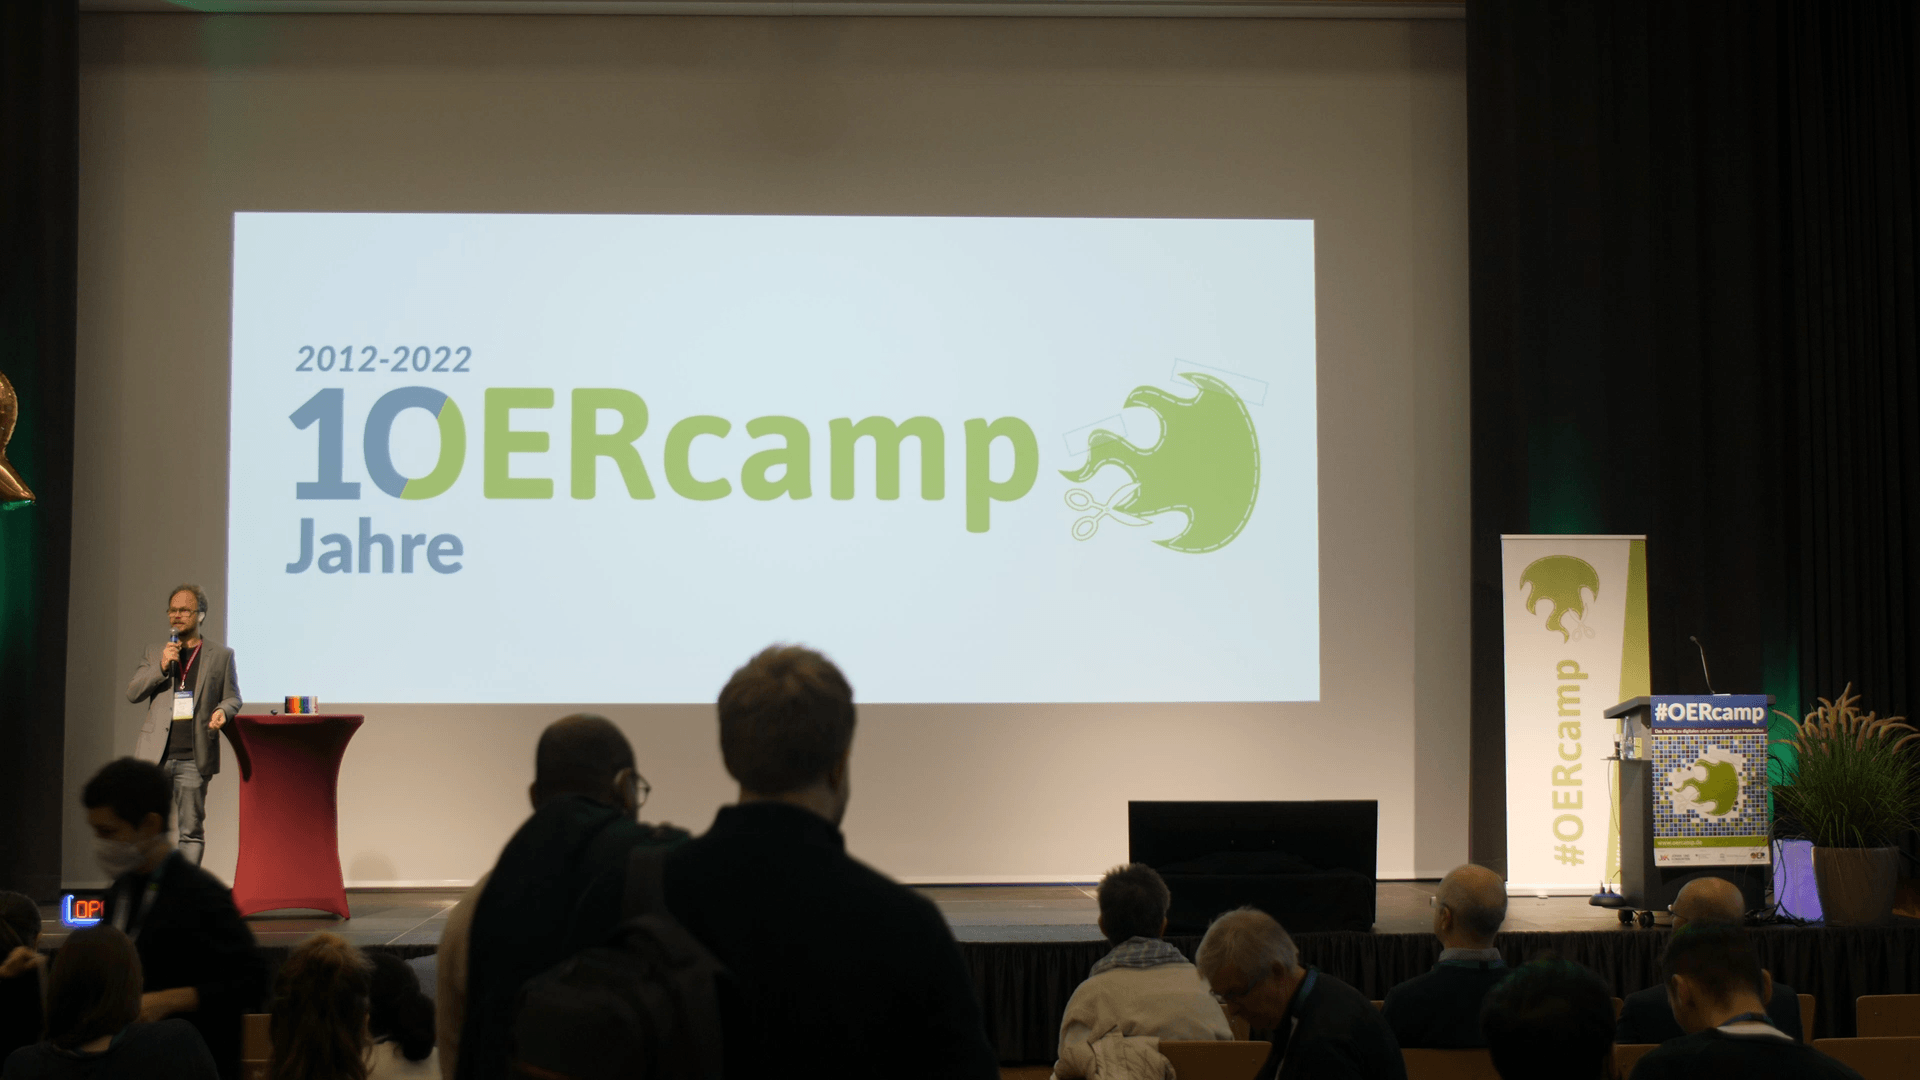 OERcamp2022: Grußworte des BMBF und der DUK, Publikum vor großer Leinwand mit dem Logo 10 Jahre OERcamp und Moderator Jöran Muß-Meerholz auf dem Podium